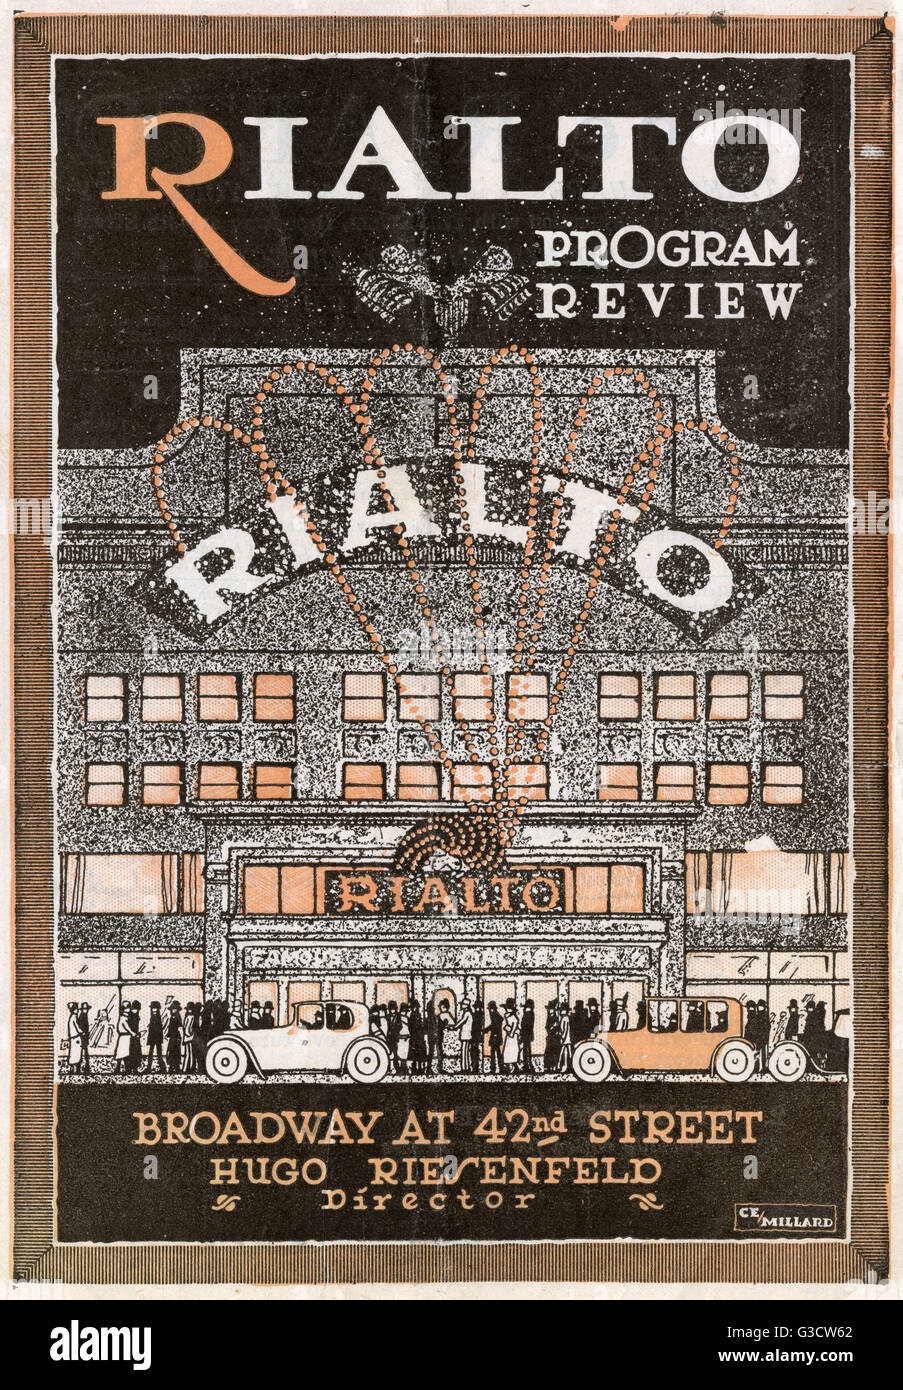 Abdeckung für die Rialto Theatre, Broadway an der 42nd Street, New York, USA, Direktor Hugo Riesenfeld, Februar 1922-Programm.  Auf dem Programm standen die Ouvertüre zu Verdis sizilianische Vesper, ein Pierrot Tanz von Marjorie Peterson, ein Paramount-Bild mit dem Titel L Stockfoto